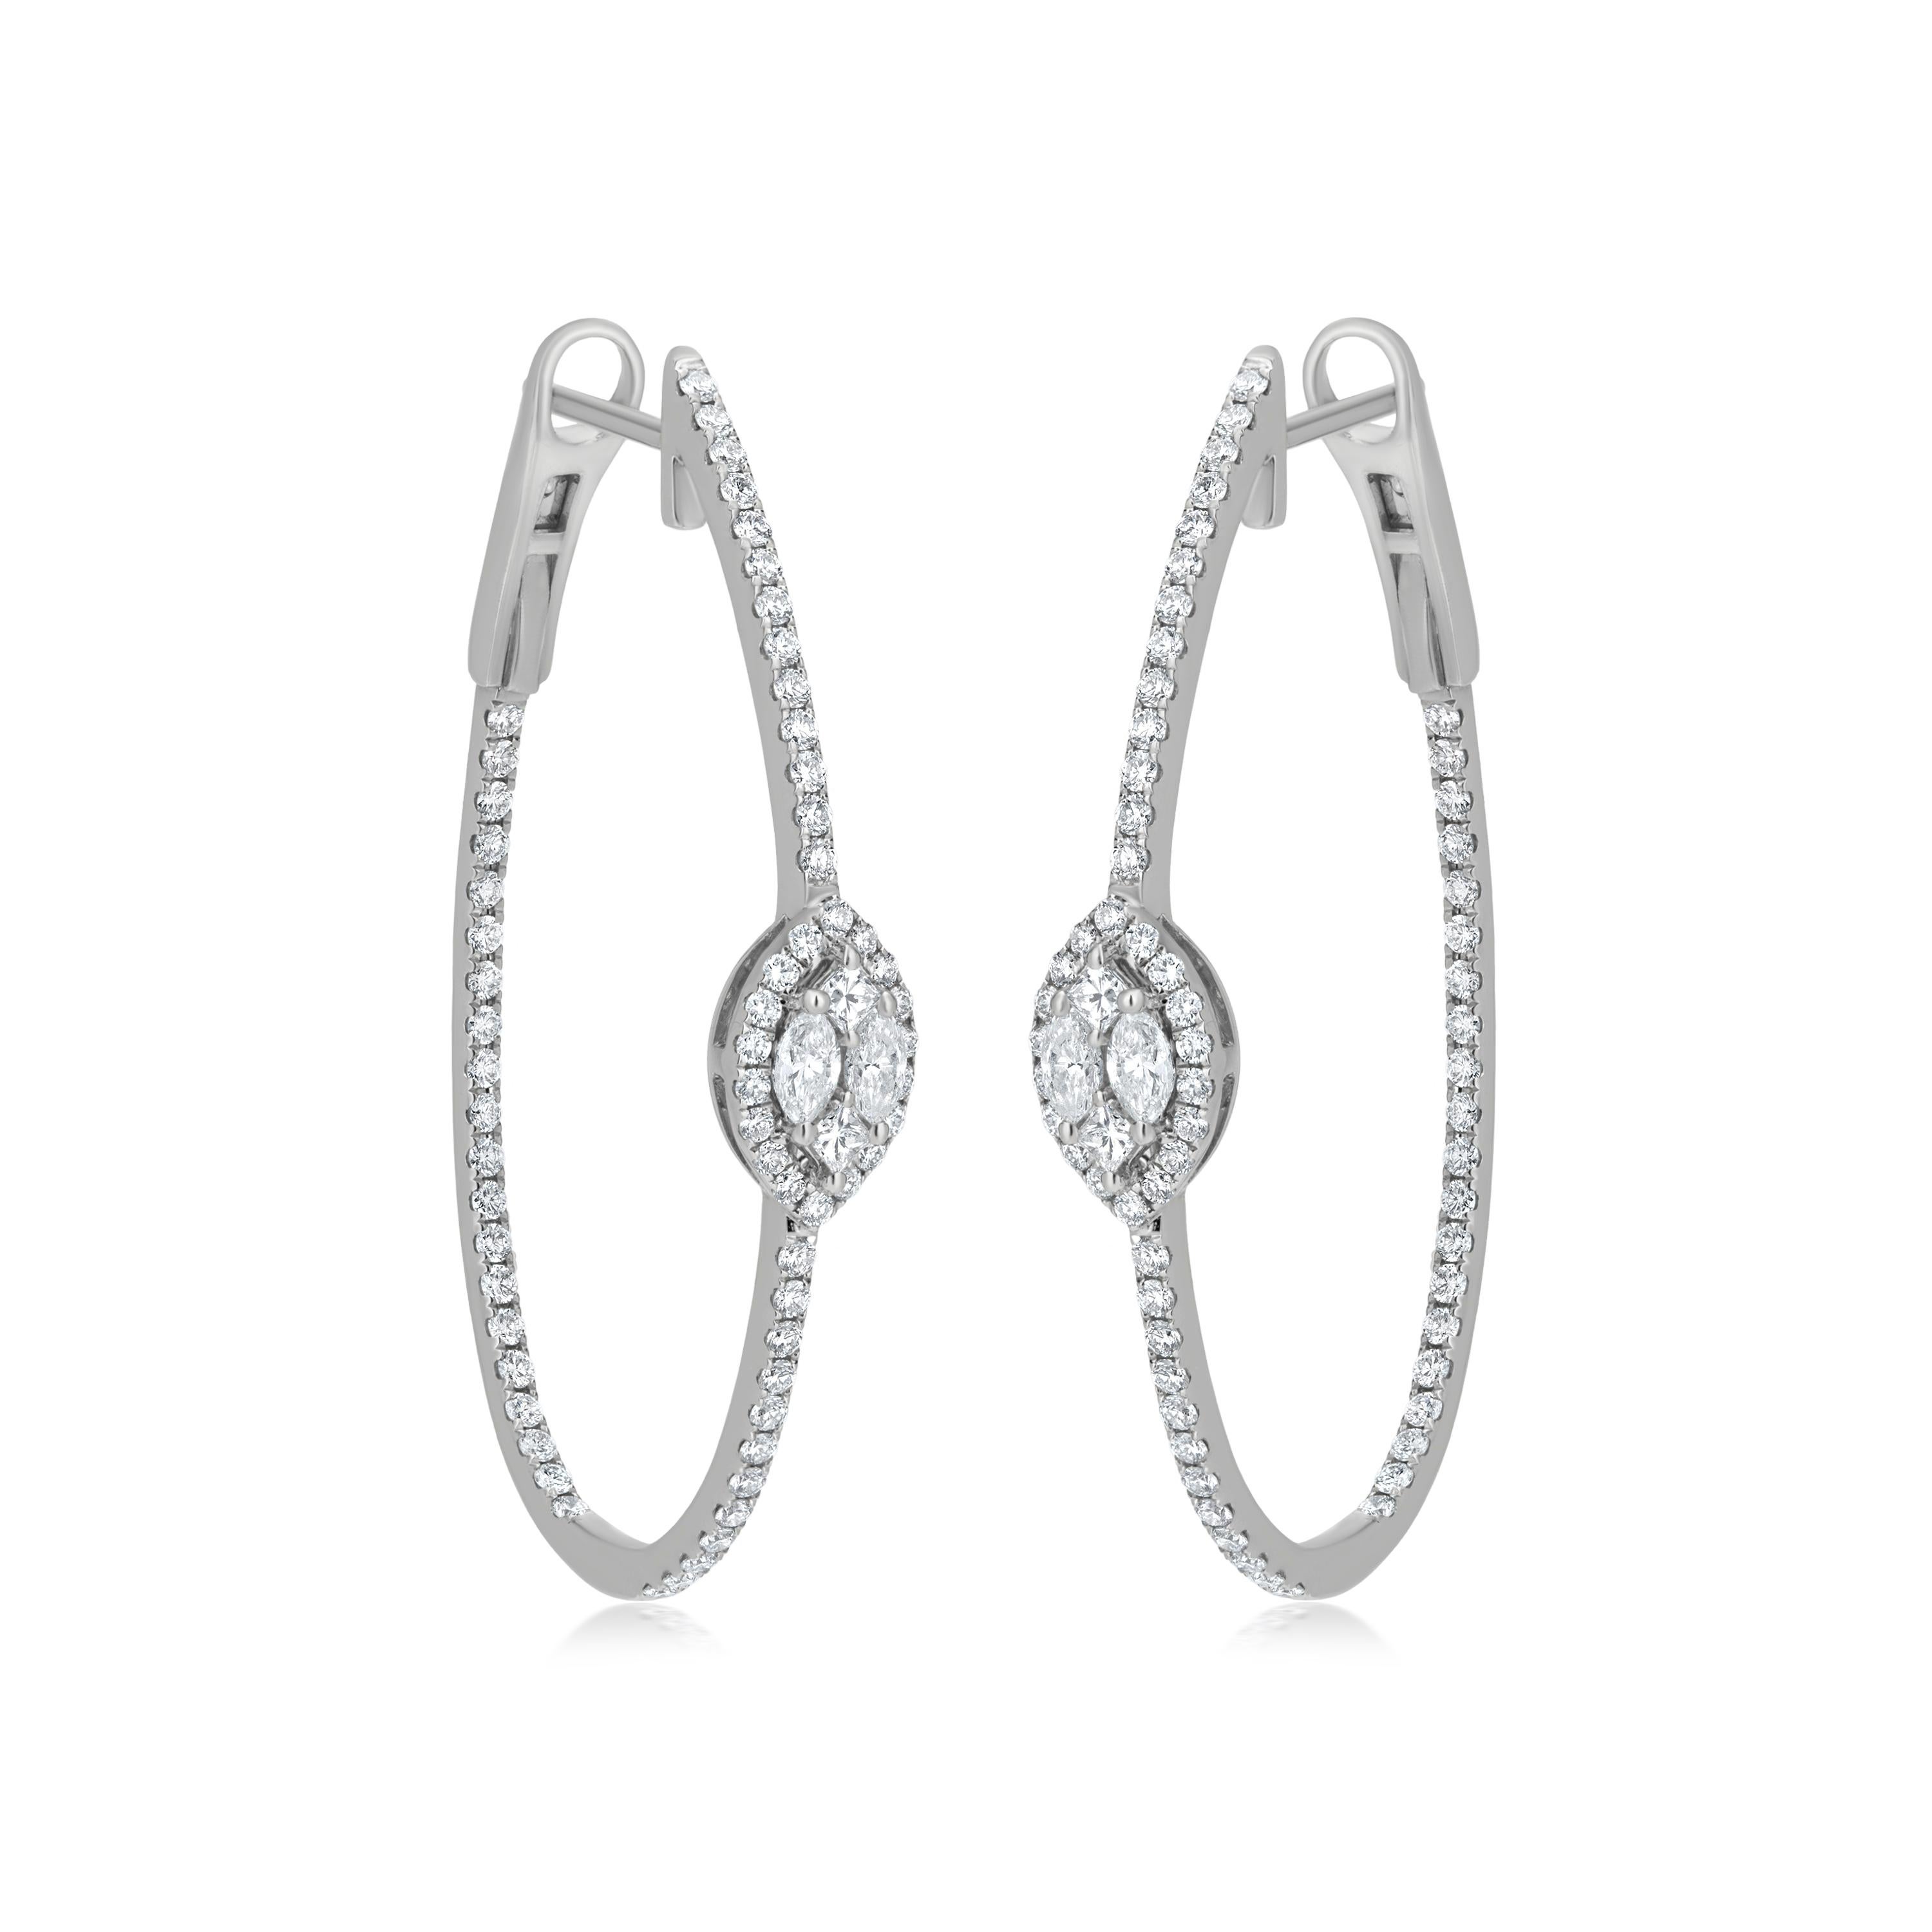 Combinaison éblouissante de diamants Un halo de diamants ronds entourant un motif de diamants marquise sur cette boucle d'oreille à l'envers sert à le mettre en valeur. Pour donner à cette boucle d'oreille un aspect captivant, des diamants pavés